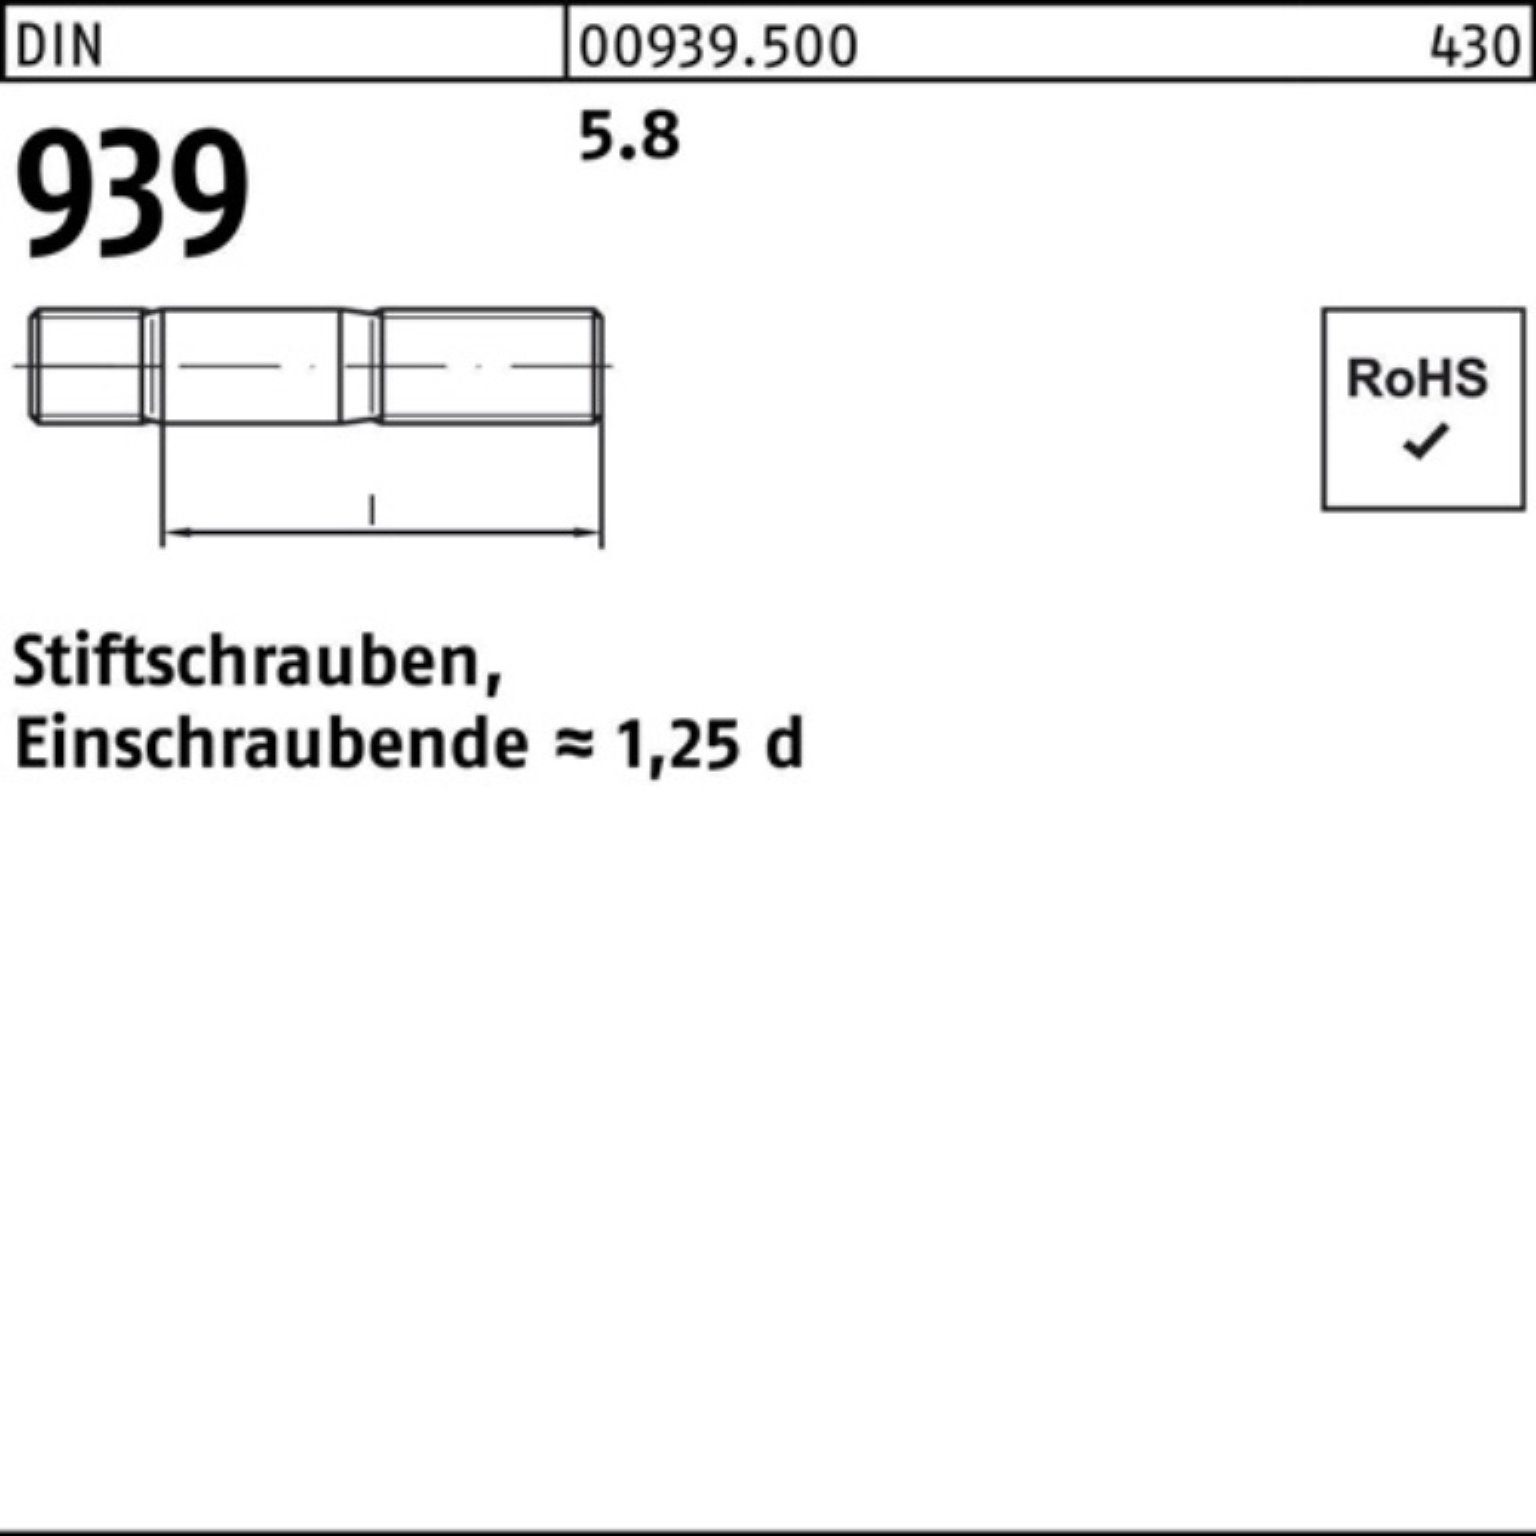 M6x 100er 939 5.8 50 Stiftschraube 100 Stiftschraube DIN Reyher Pack S Einschraubende=1,25d